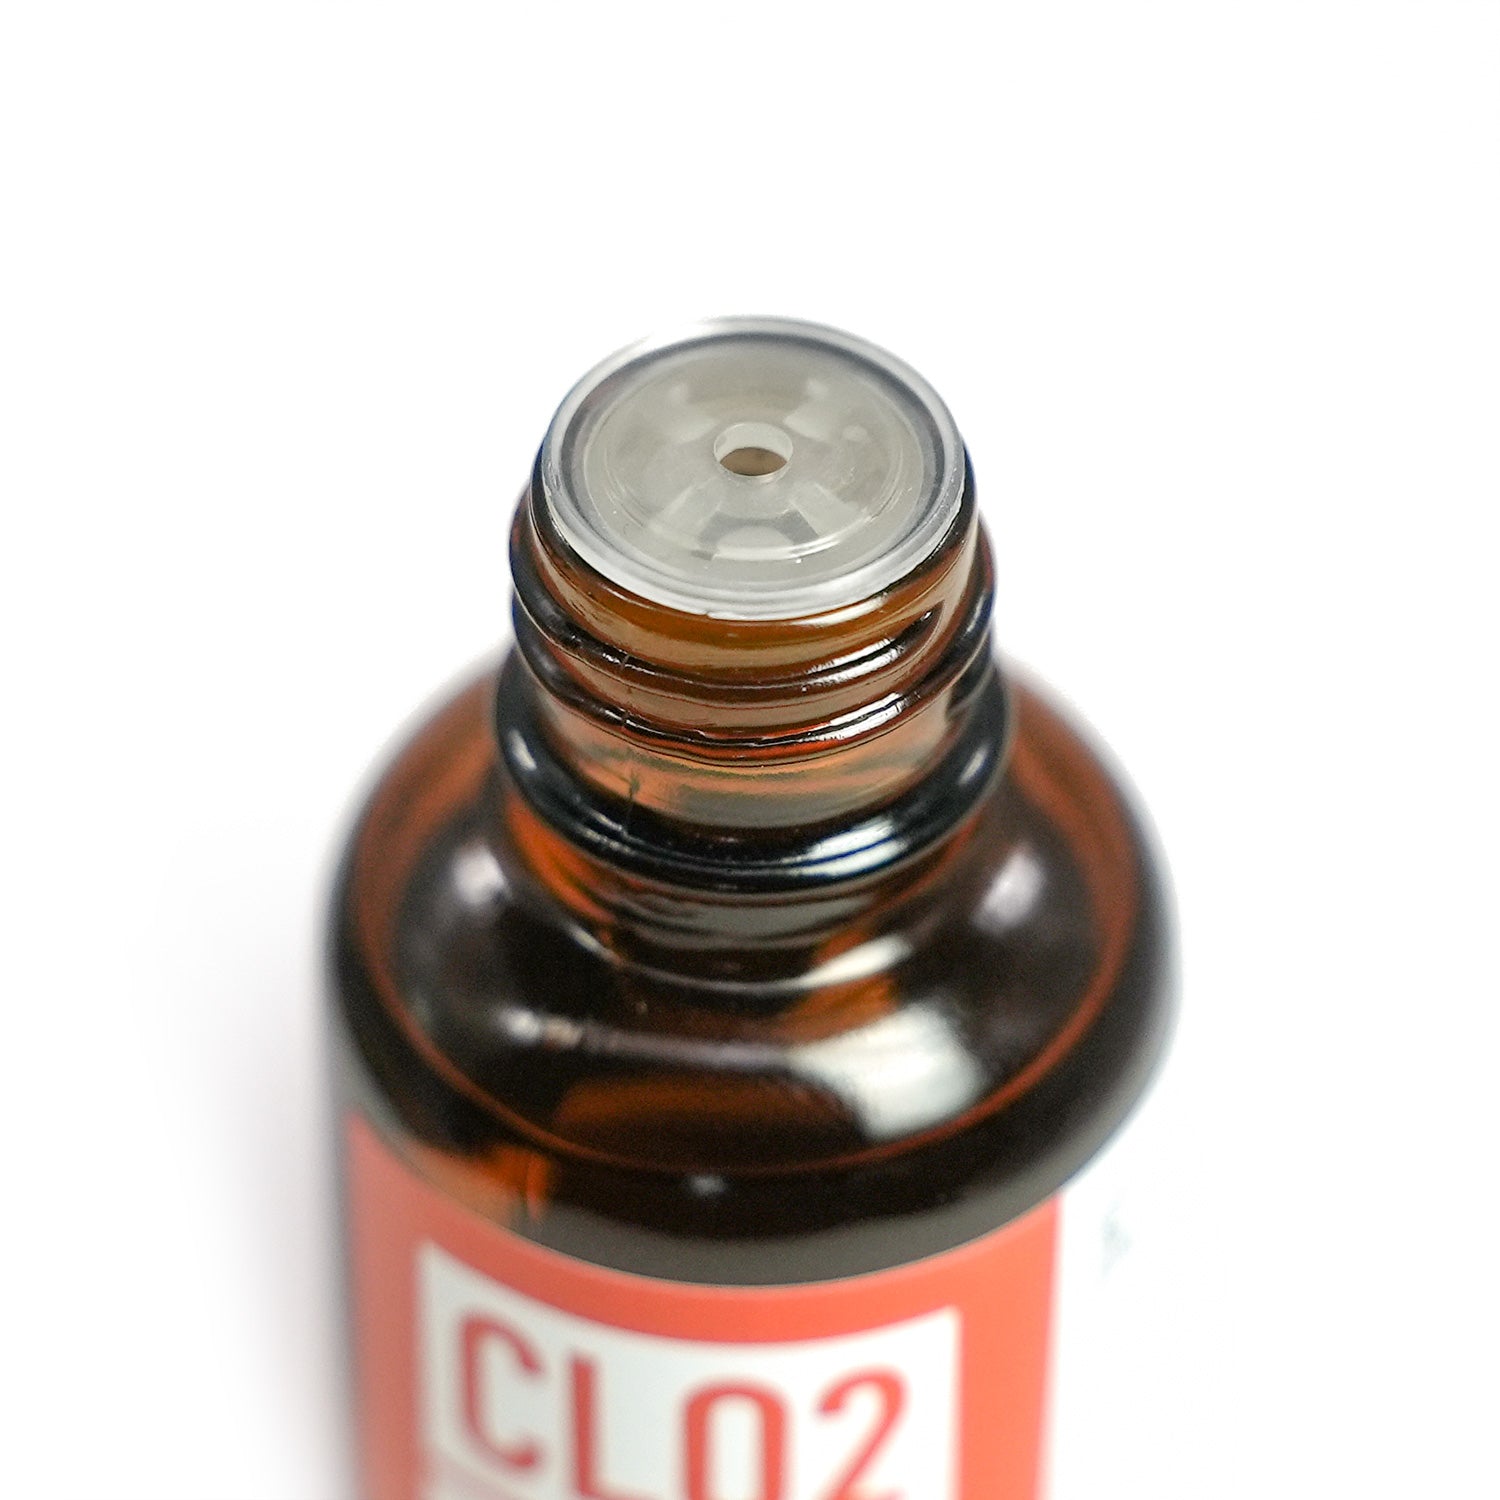 二酸化塩素水溶液 0.3% 3ml ClO2 ラベル付きバイアル瓶入り 無機化合物標本 試薬 試料 Chlorine dioxide solution